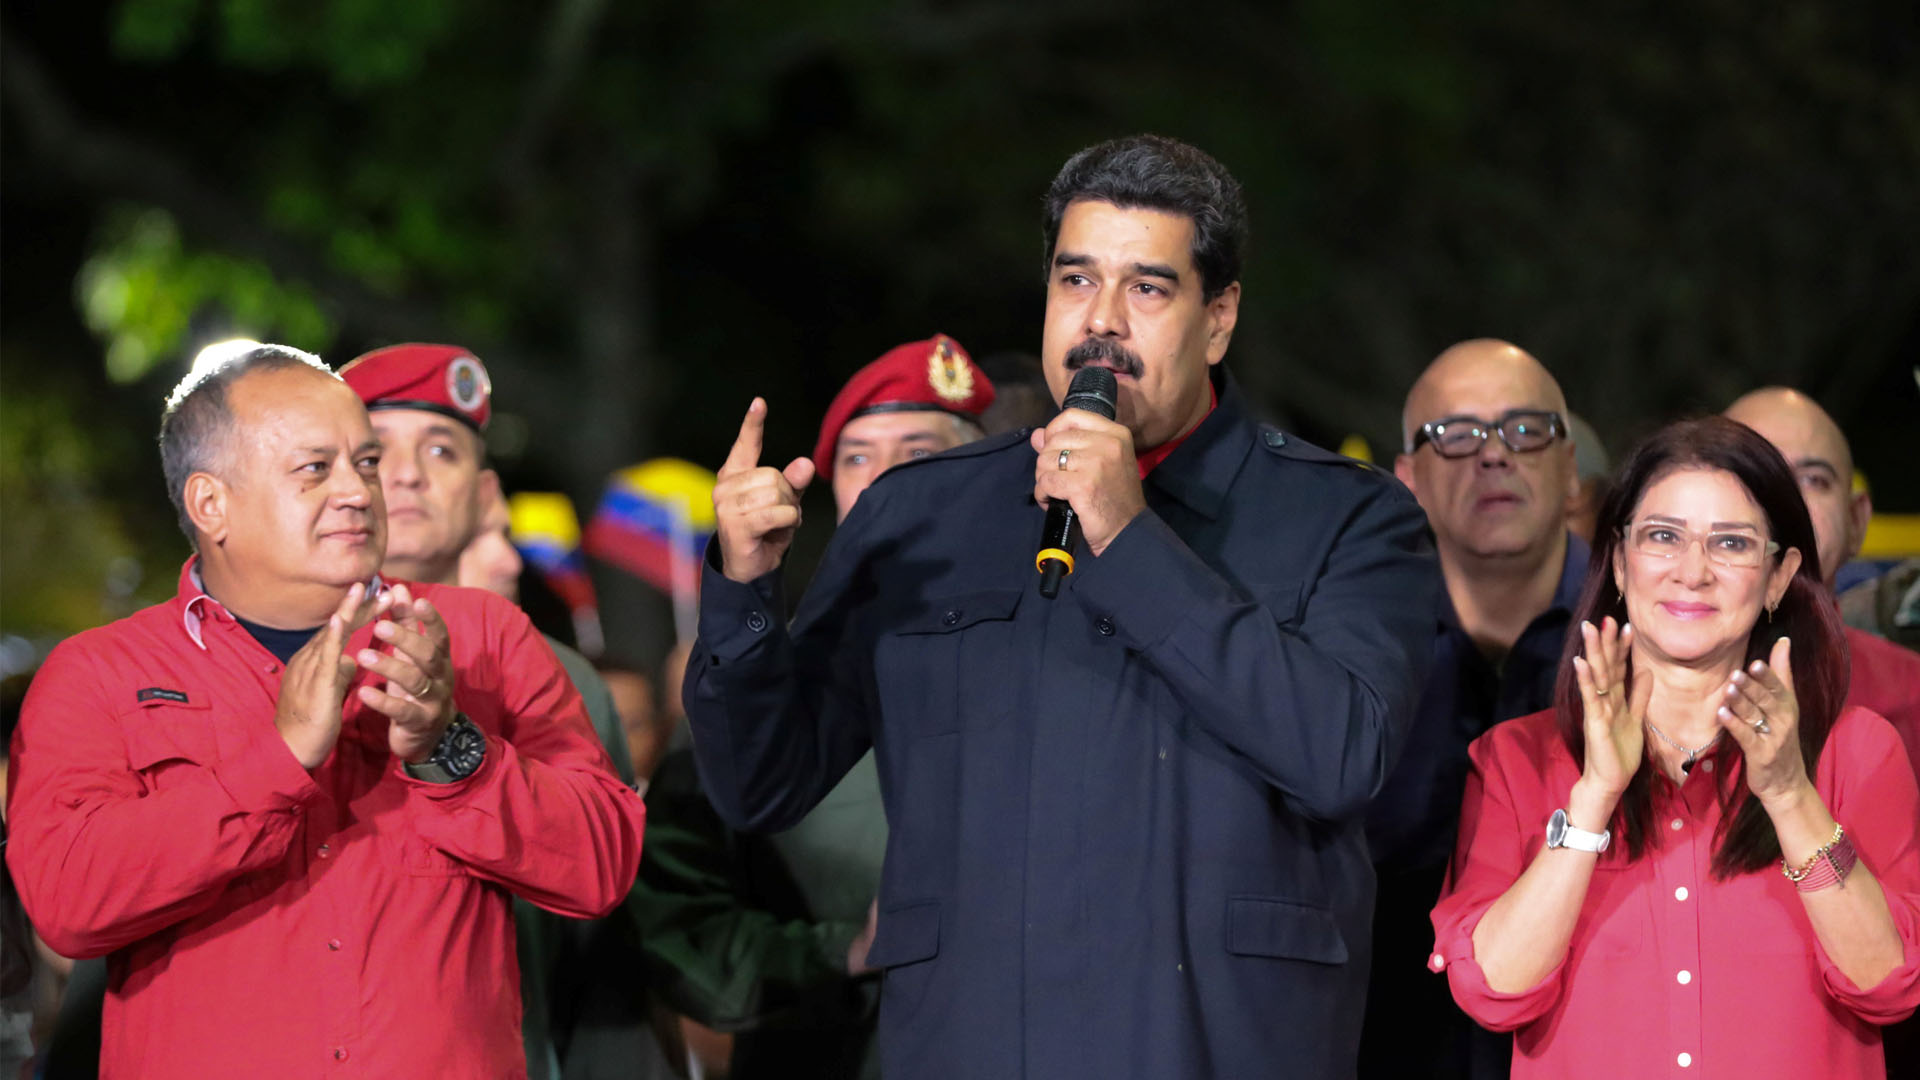 El chavismo mantiene su dominio tras la elección de gobernadores y la oposición rechaza los resultados